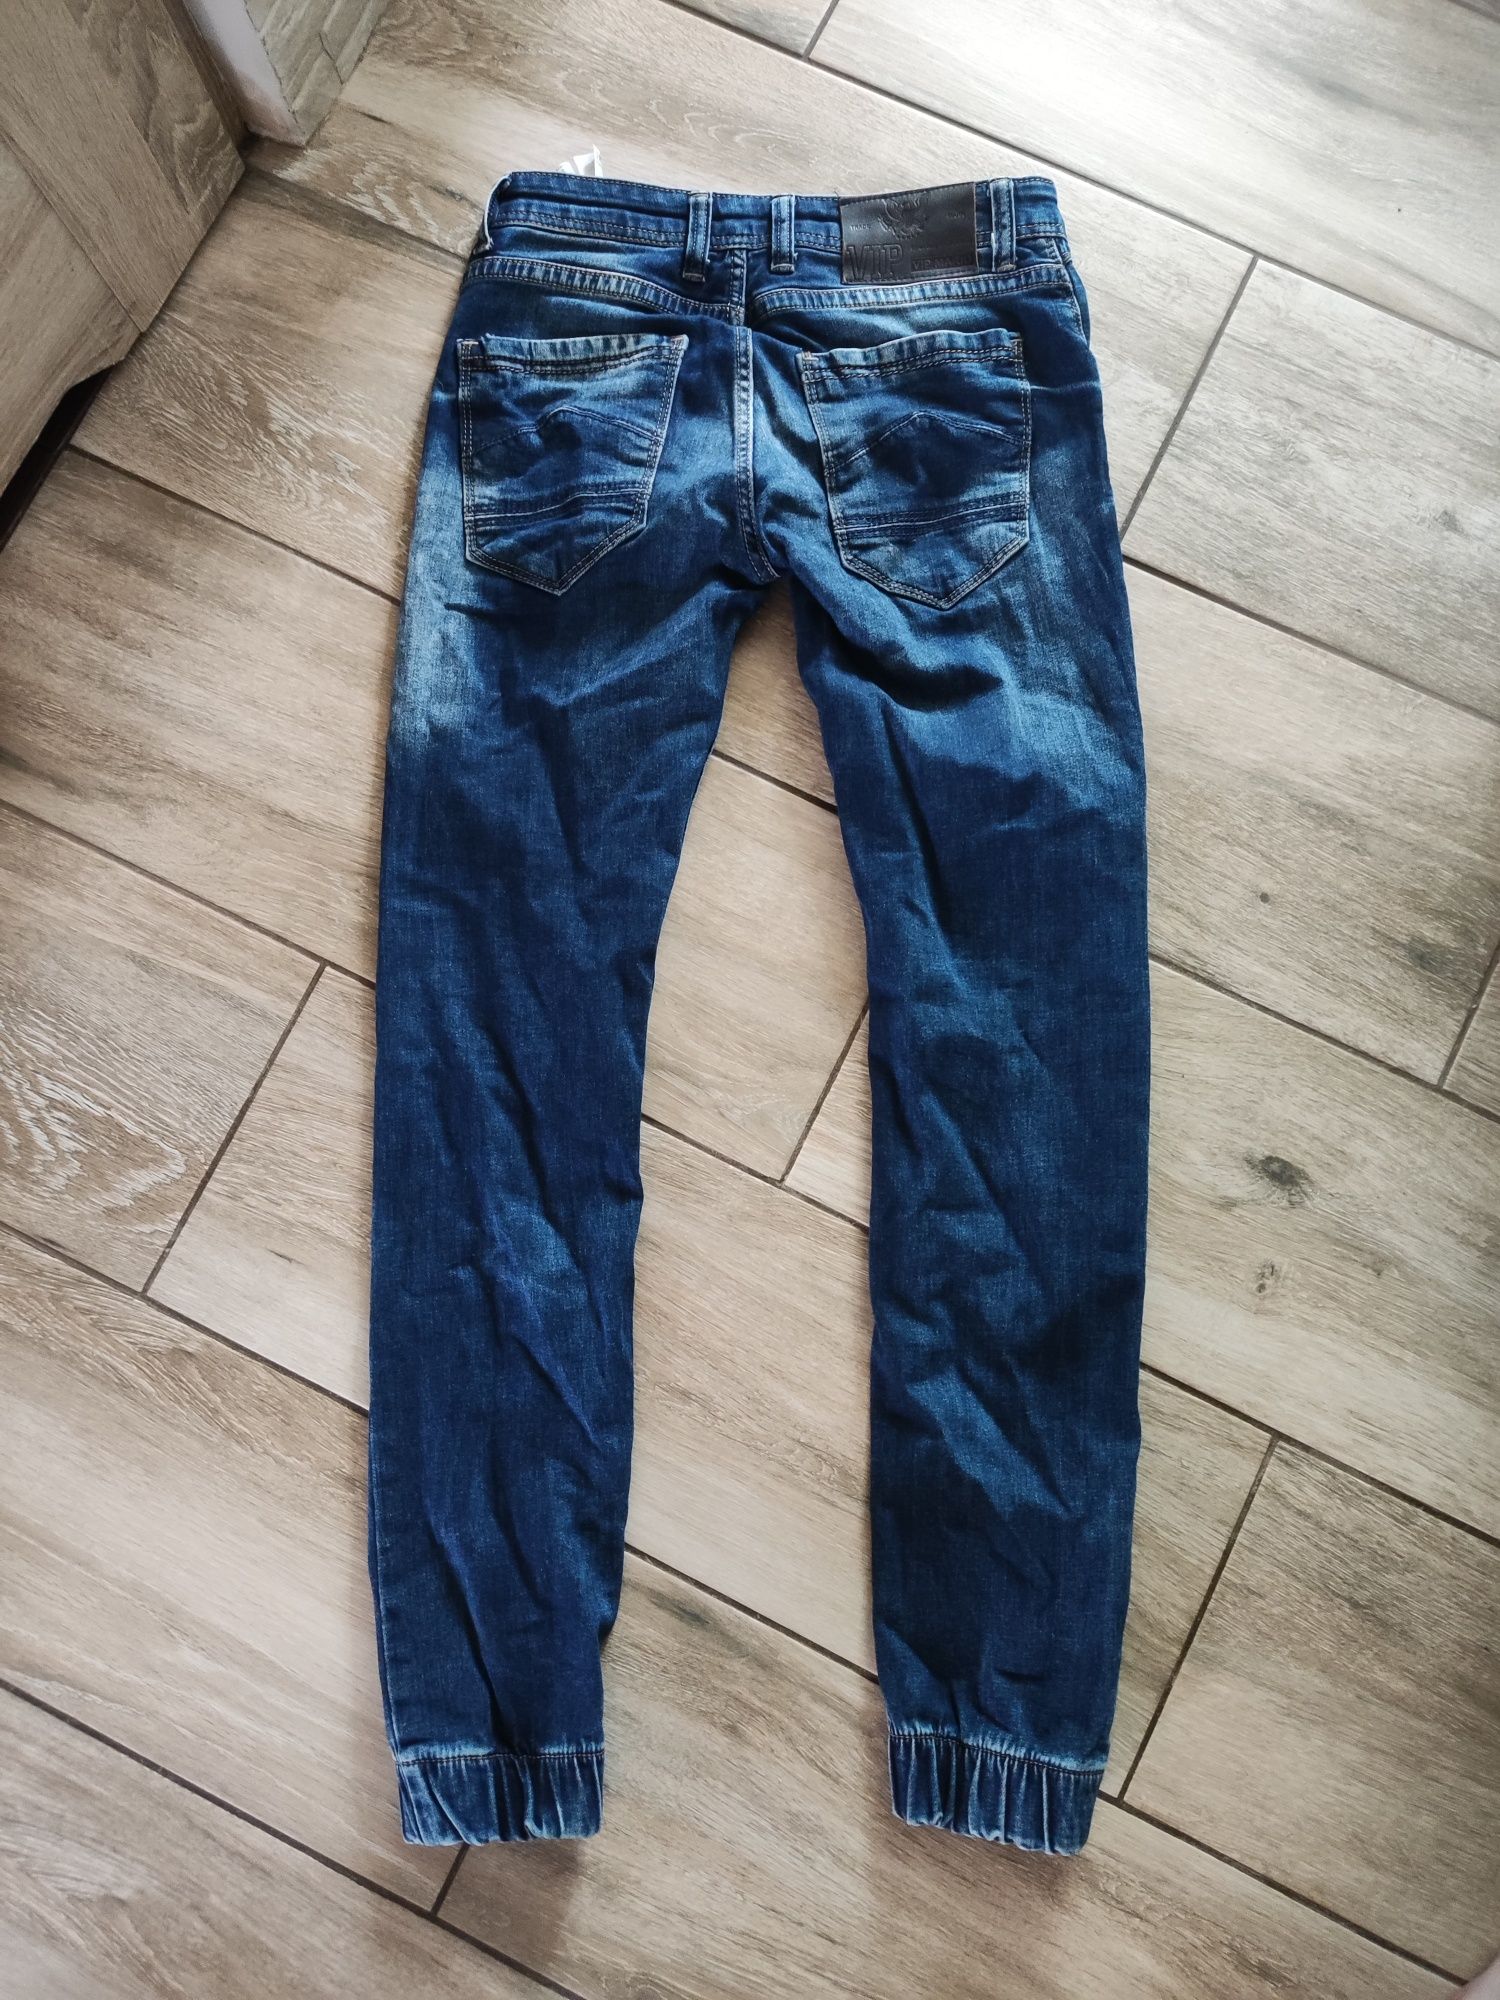 Spodnie męskie jeansowe slim fit rozmiar 31/34